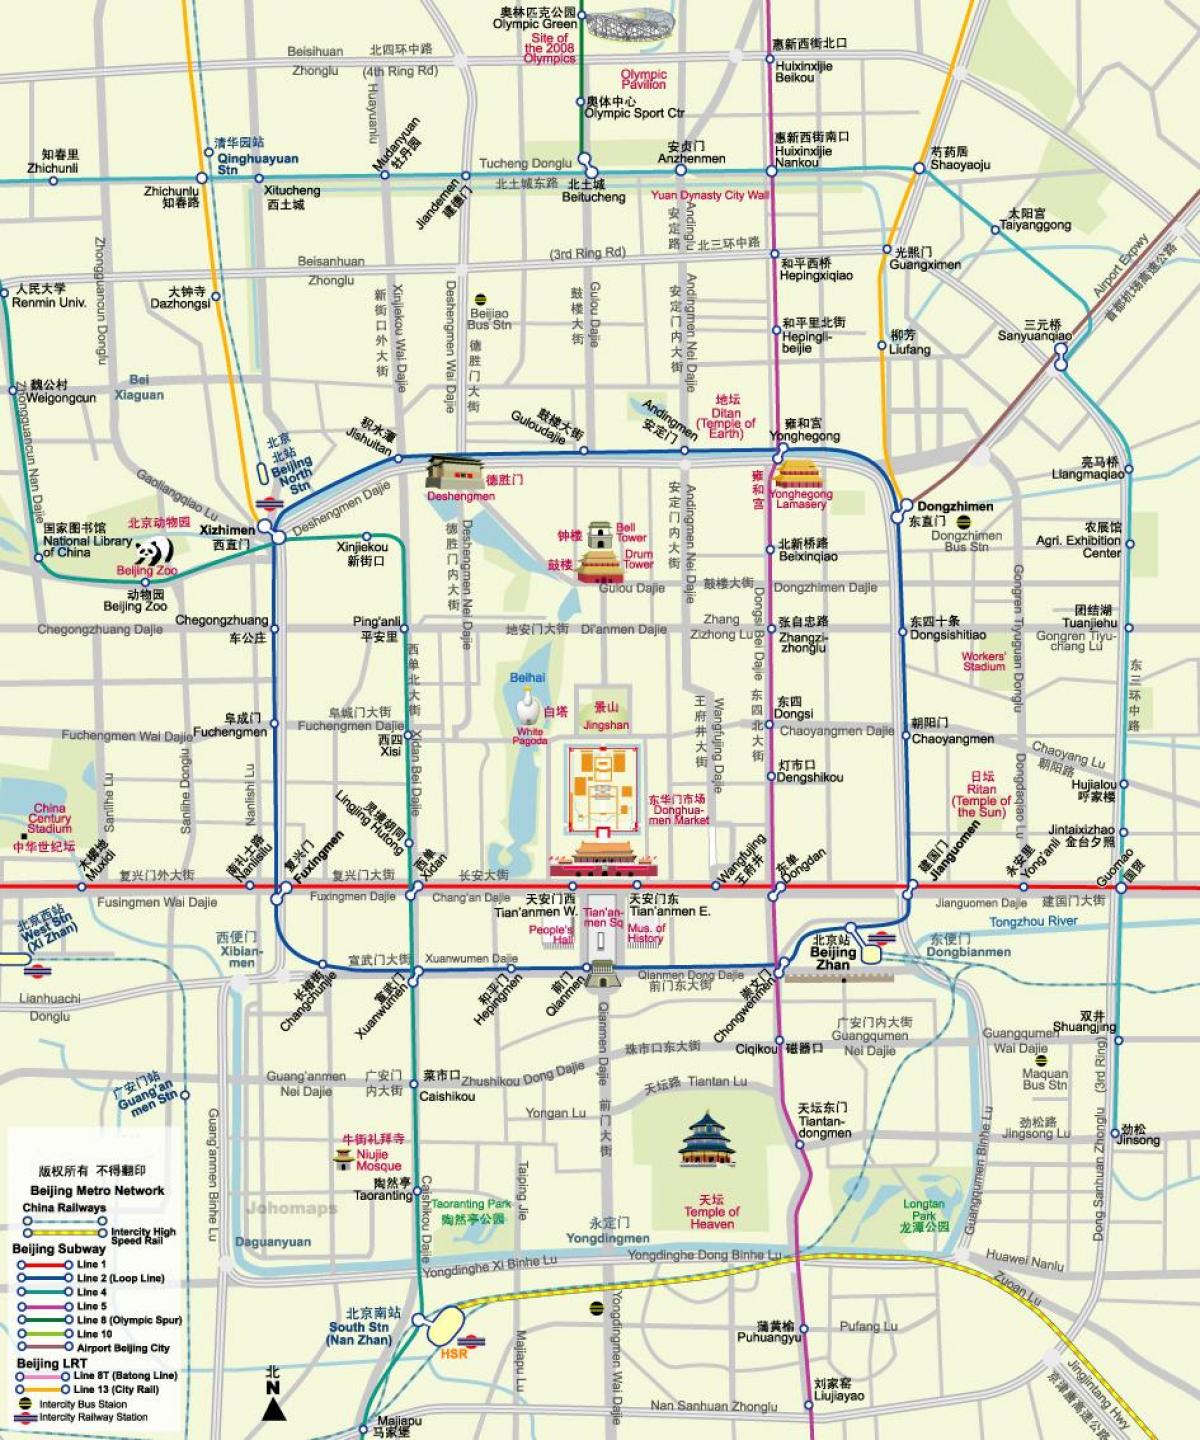 mappa di Pechino mappa della metropolitana, con attrazioni turistiche